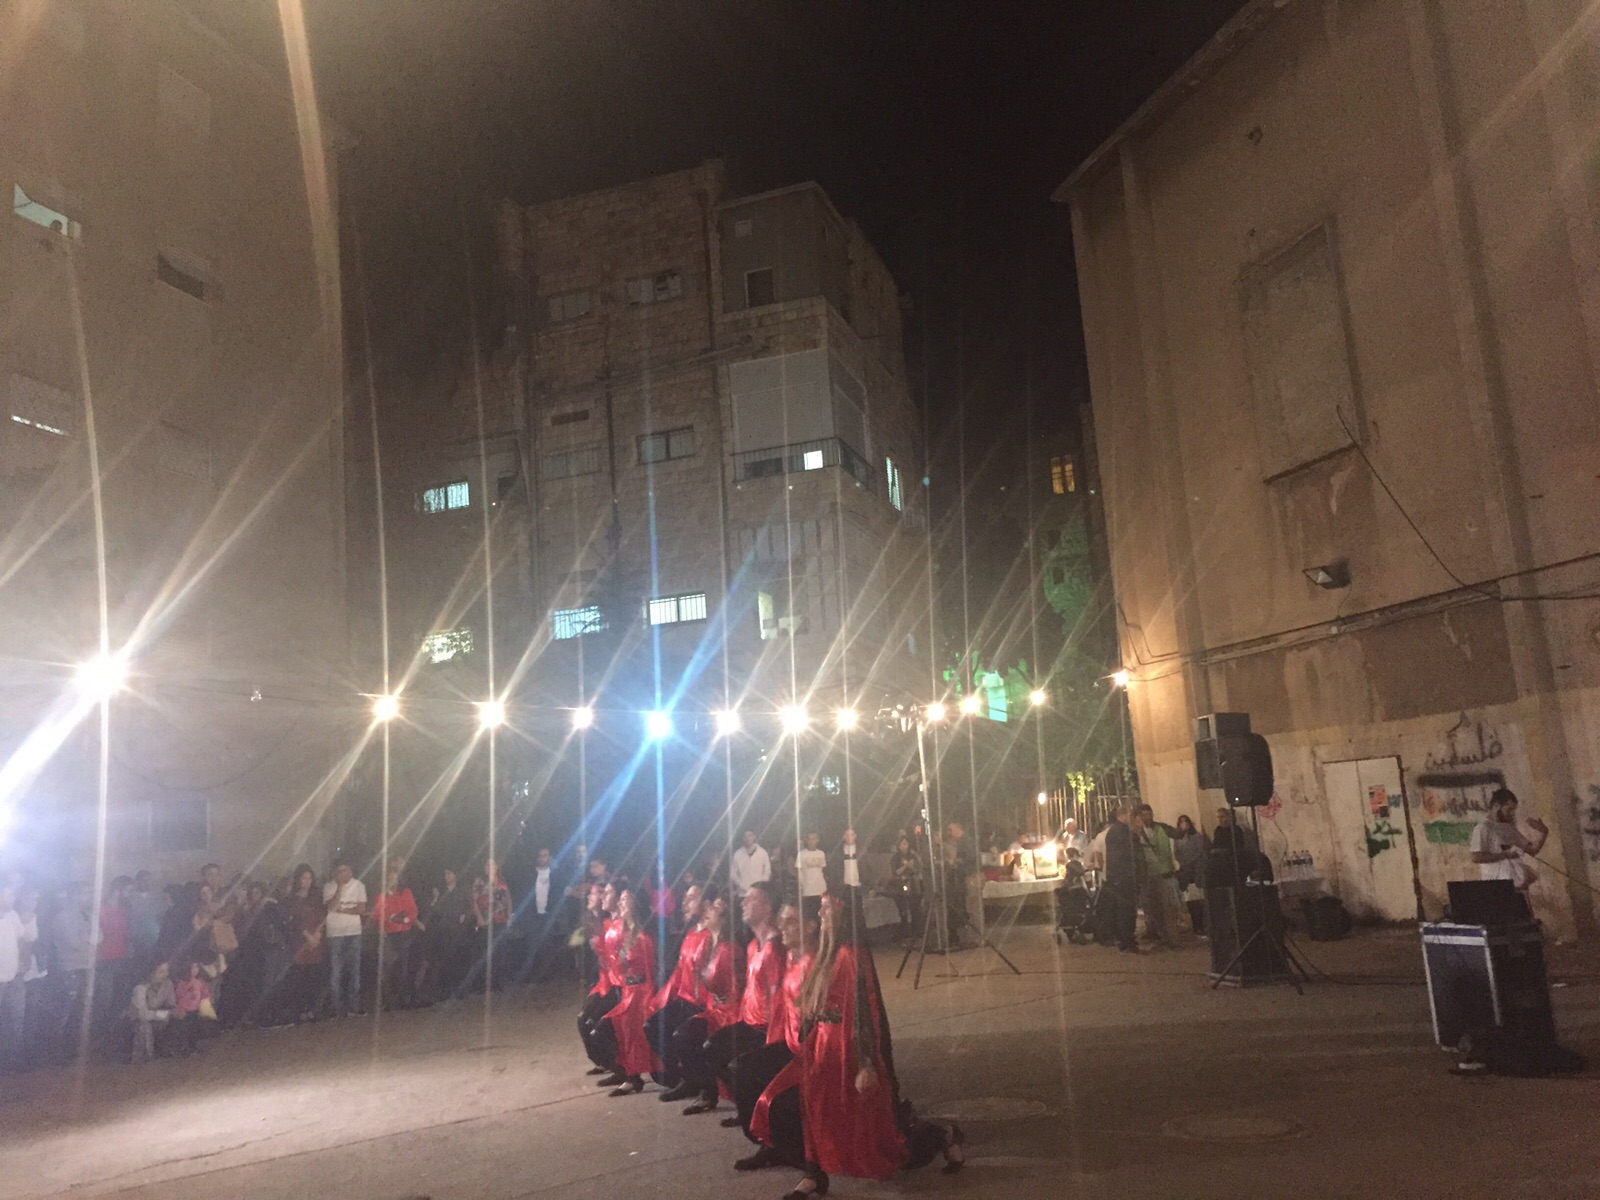 أنا أحب حيفا: افتتاح مهرجان الانتماء الأول في المدينة